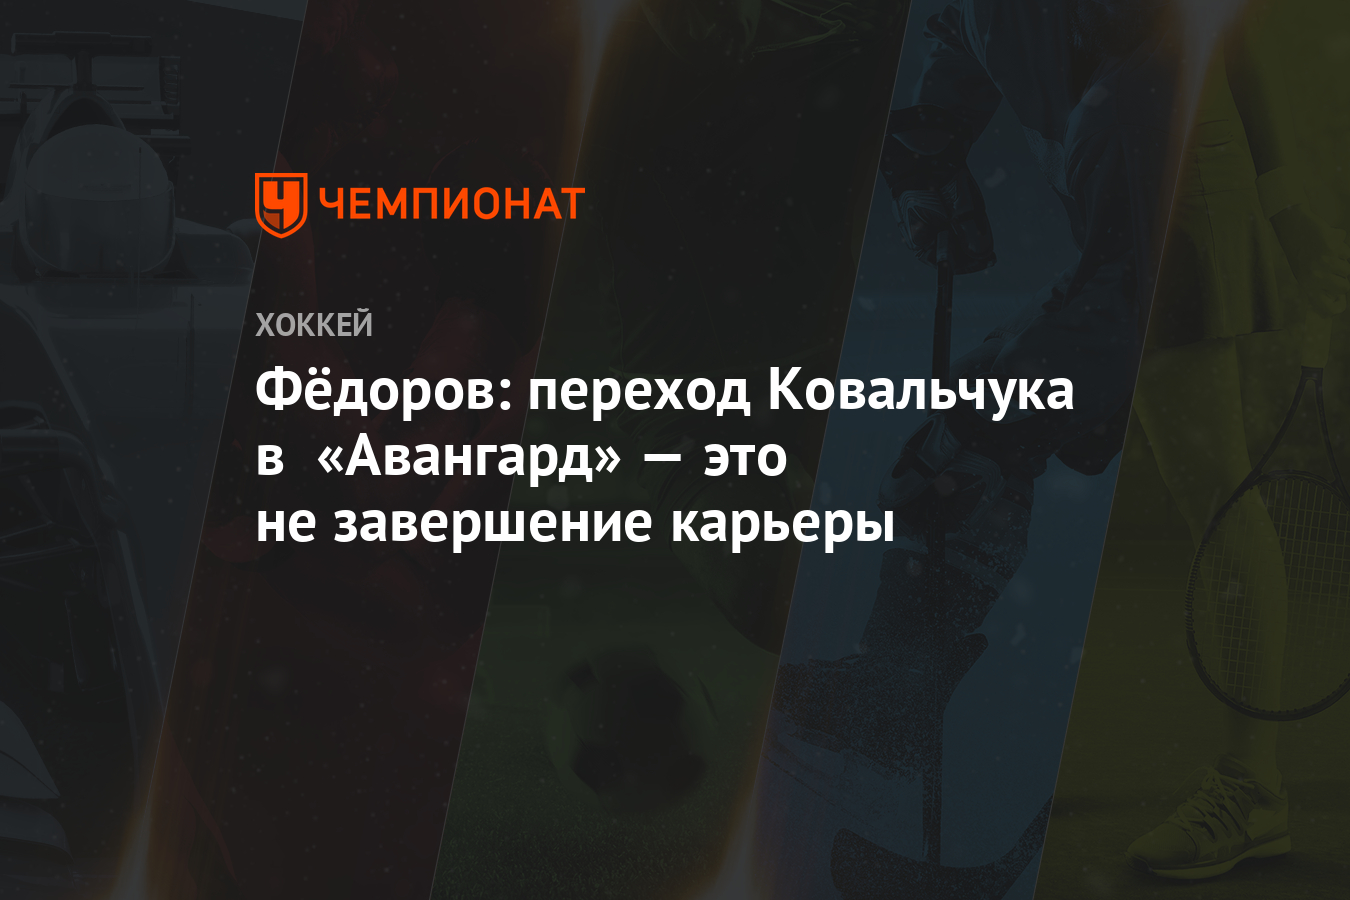 Федоров: переход Ковальчука в «Авангард» — это не завершение карьеры